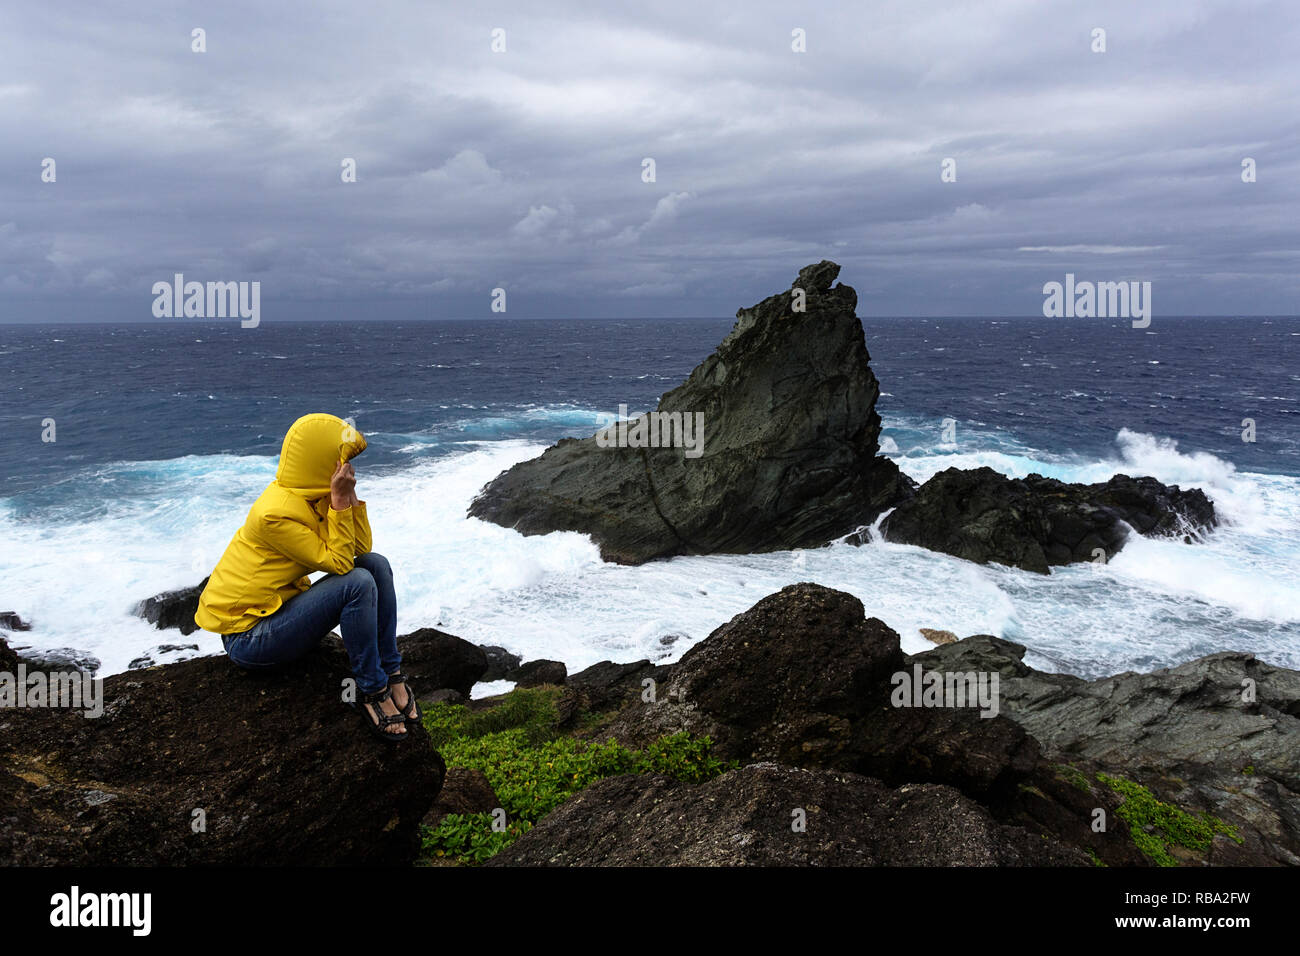 Woman in yellow jacket gel sur un rocher à la recherche à l'état de la mer sur la côte sauvage à Uganzaki dans le phare de l'Île Ishigaki, Japon Okinawa Banque D'Images